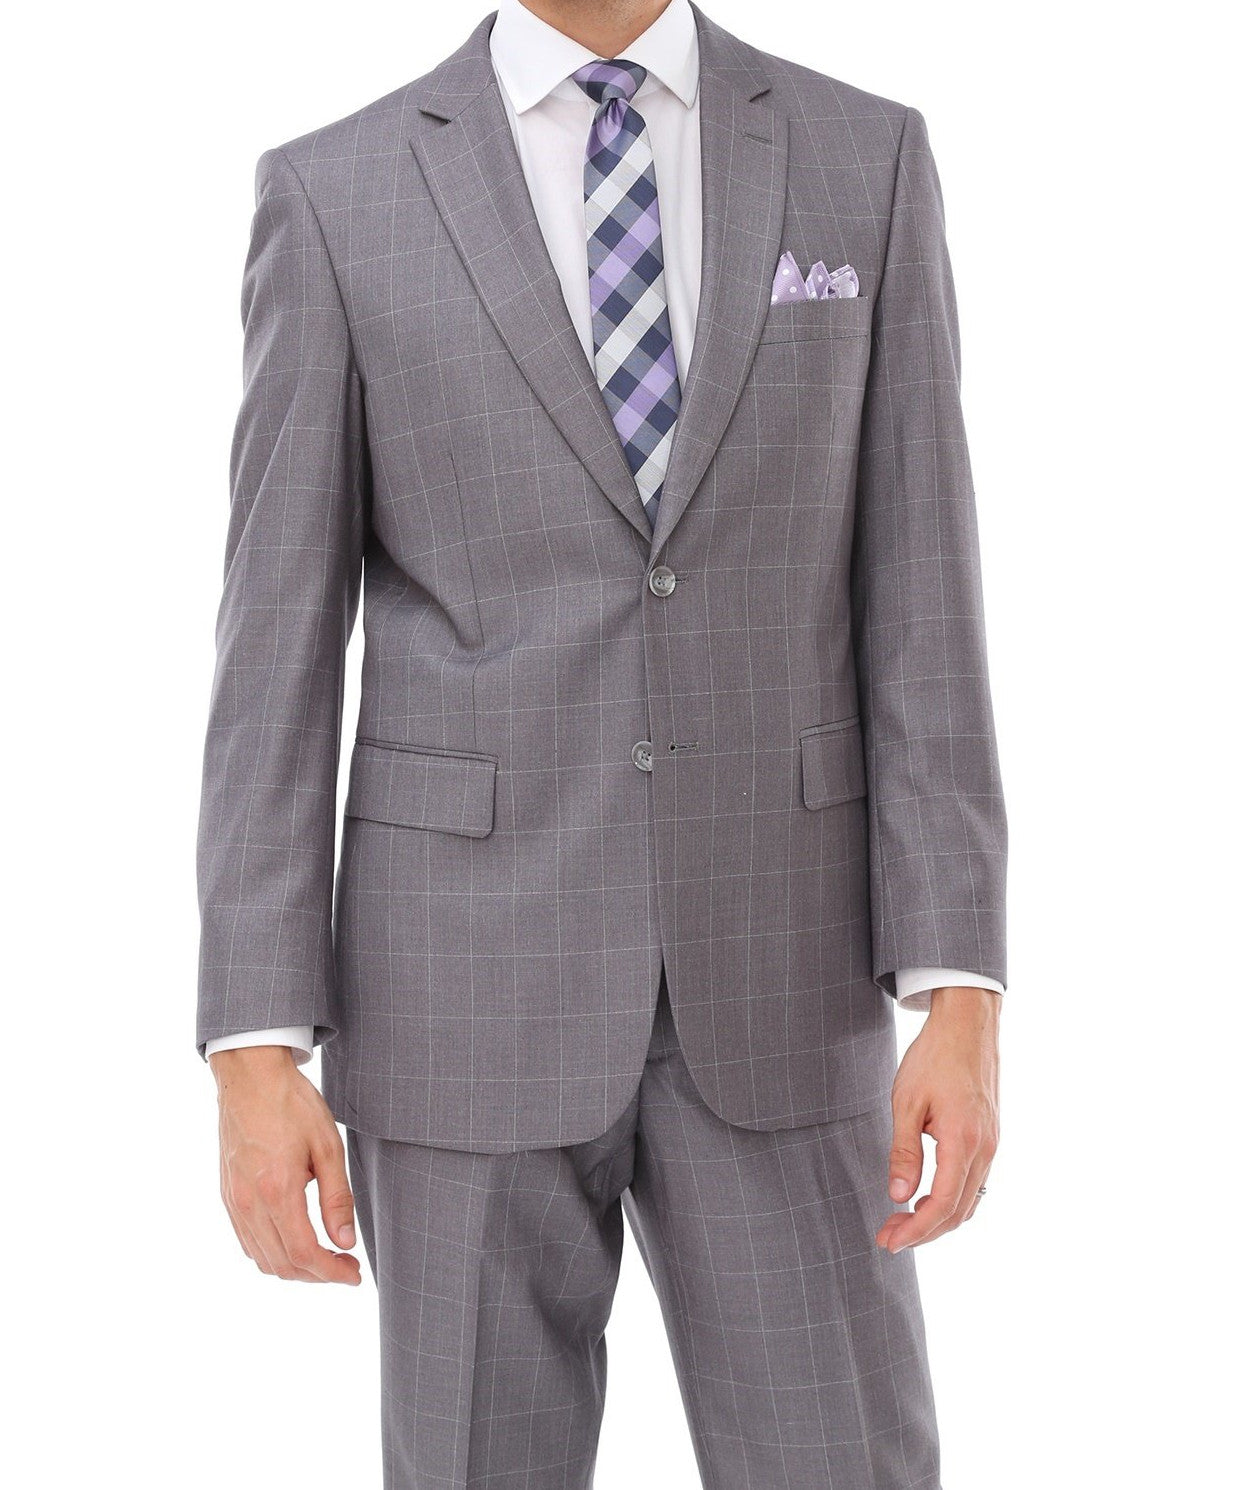 Wool Suit Modern Fit Windowpane 2 Piece in Light Gray